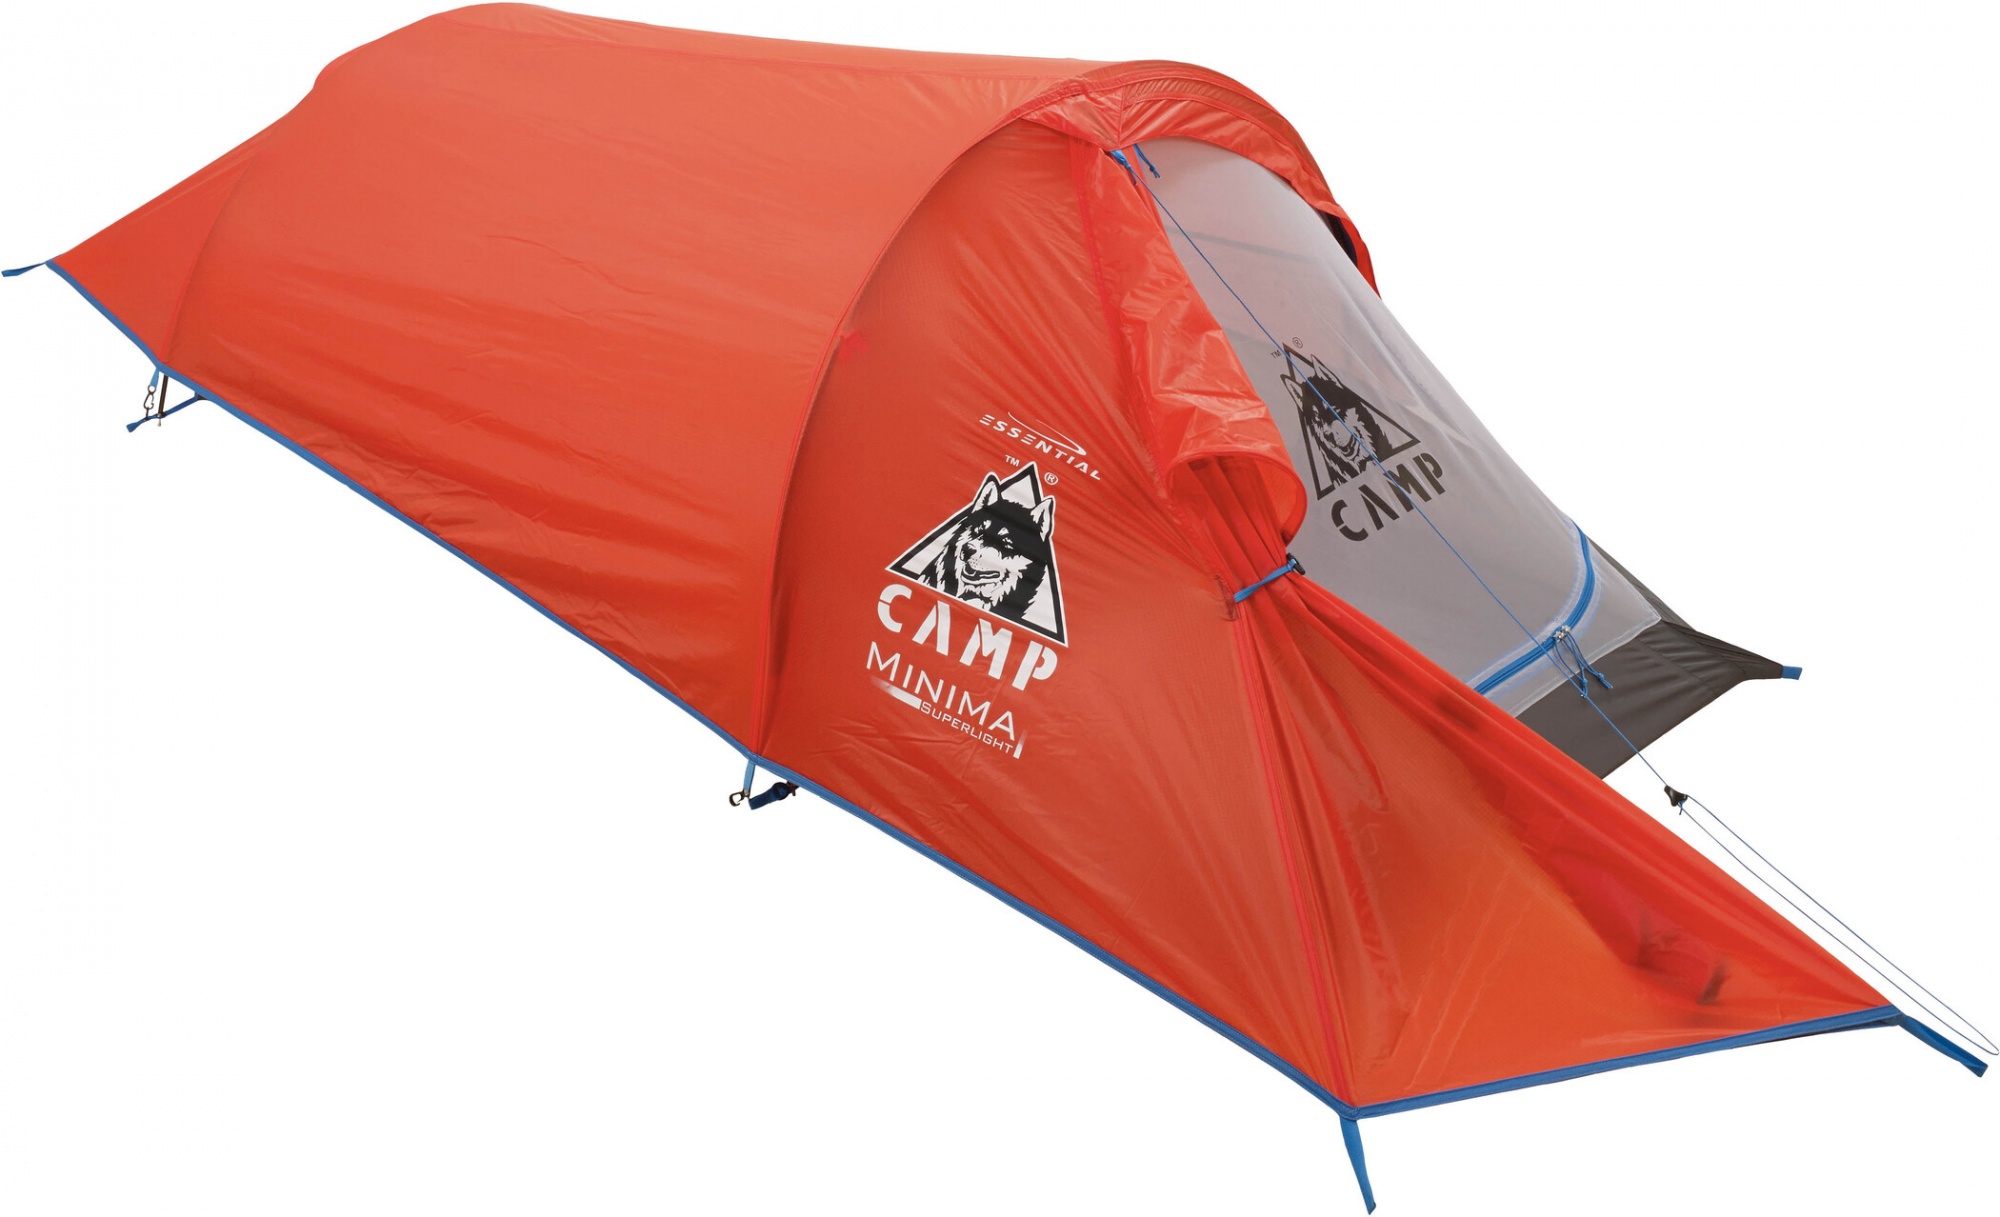 Палатка одноместная туристическая. Палатка Camp minima 1 SL. Палатка Camp minima 2 SL. Палатка Camp minima 3 SL. Палатка Camp minima 1 EVO.